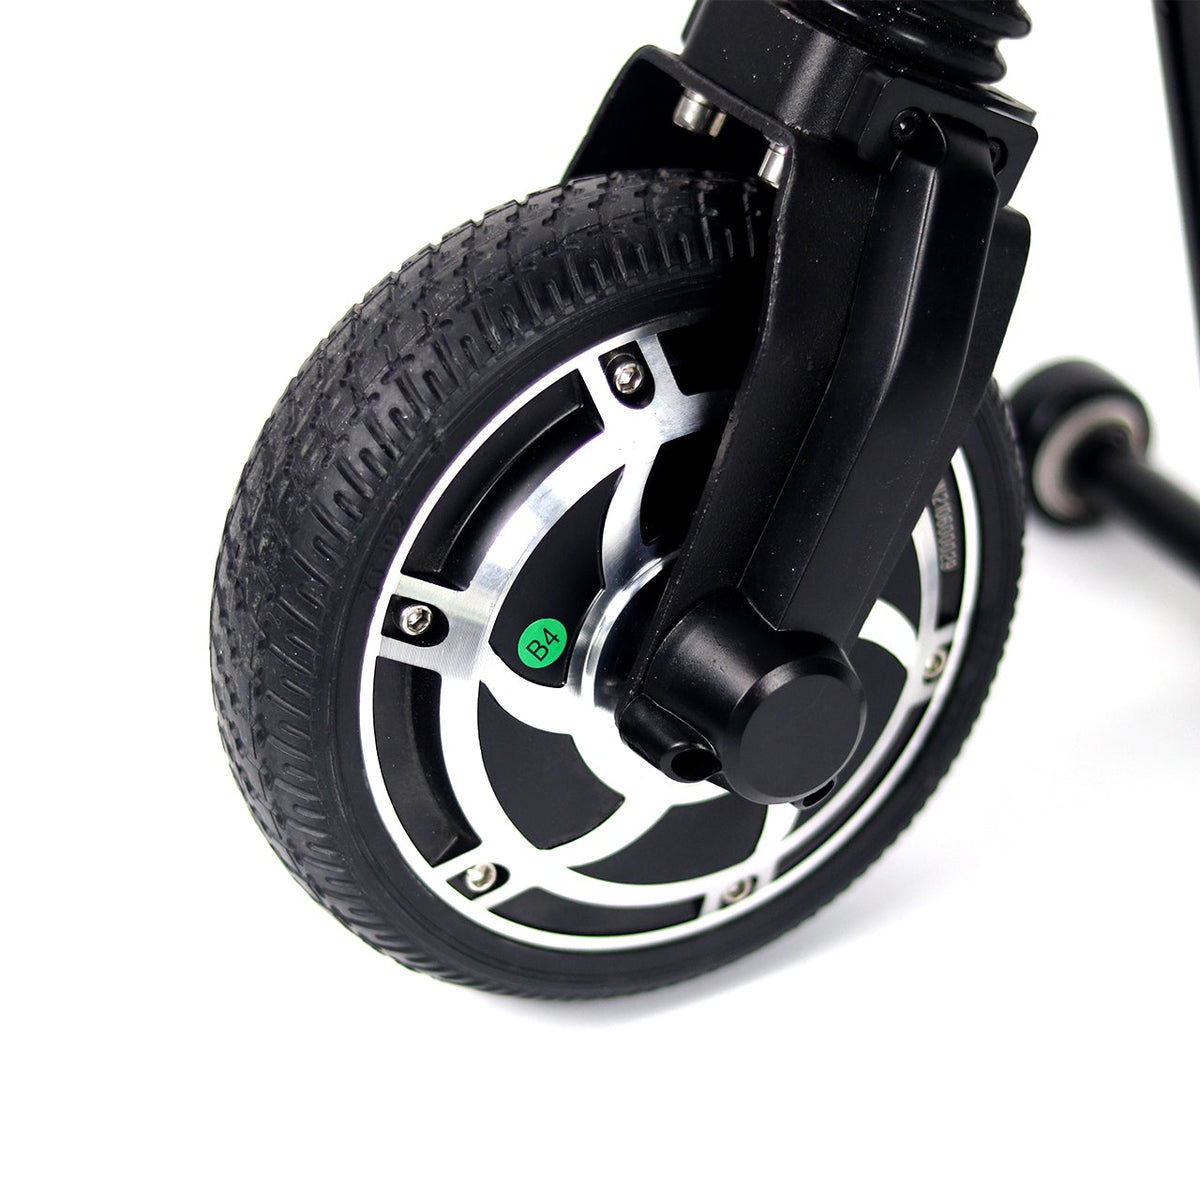 Compacte elektrische handbike voor handmatige rolstoelen